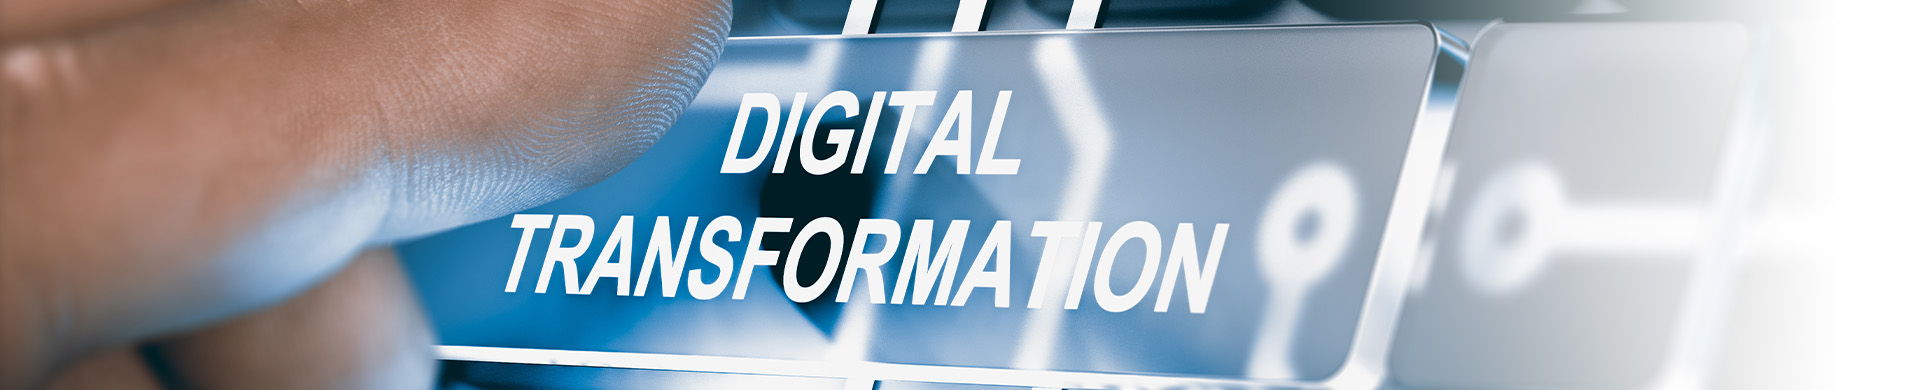 Förderprogramm "Digital jetzt" – Investitionsförderung für KMU